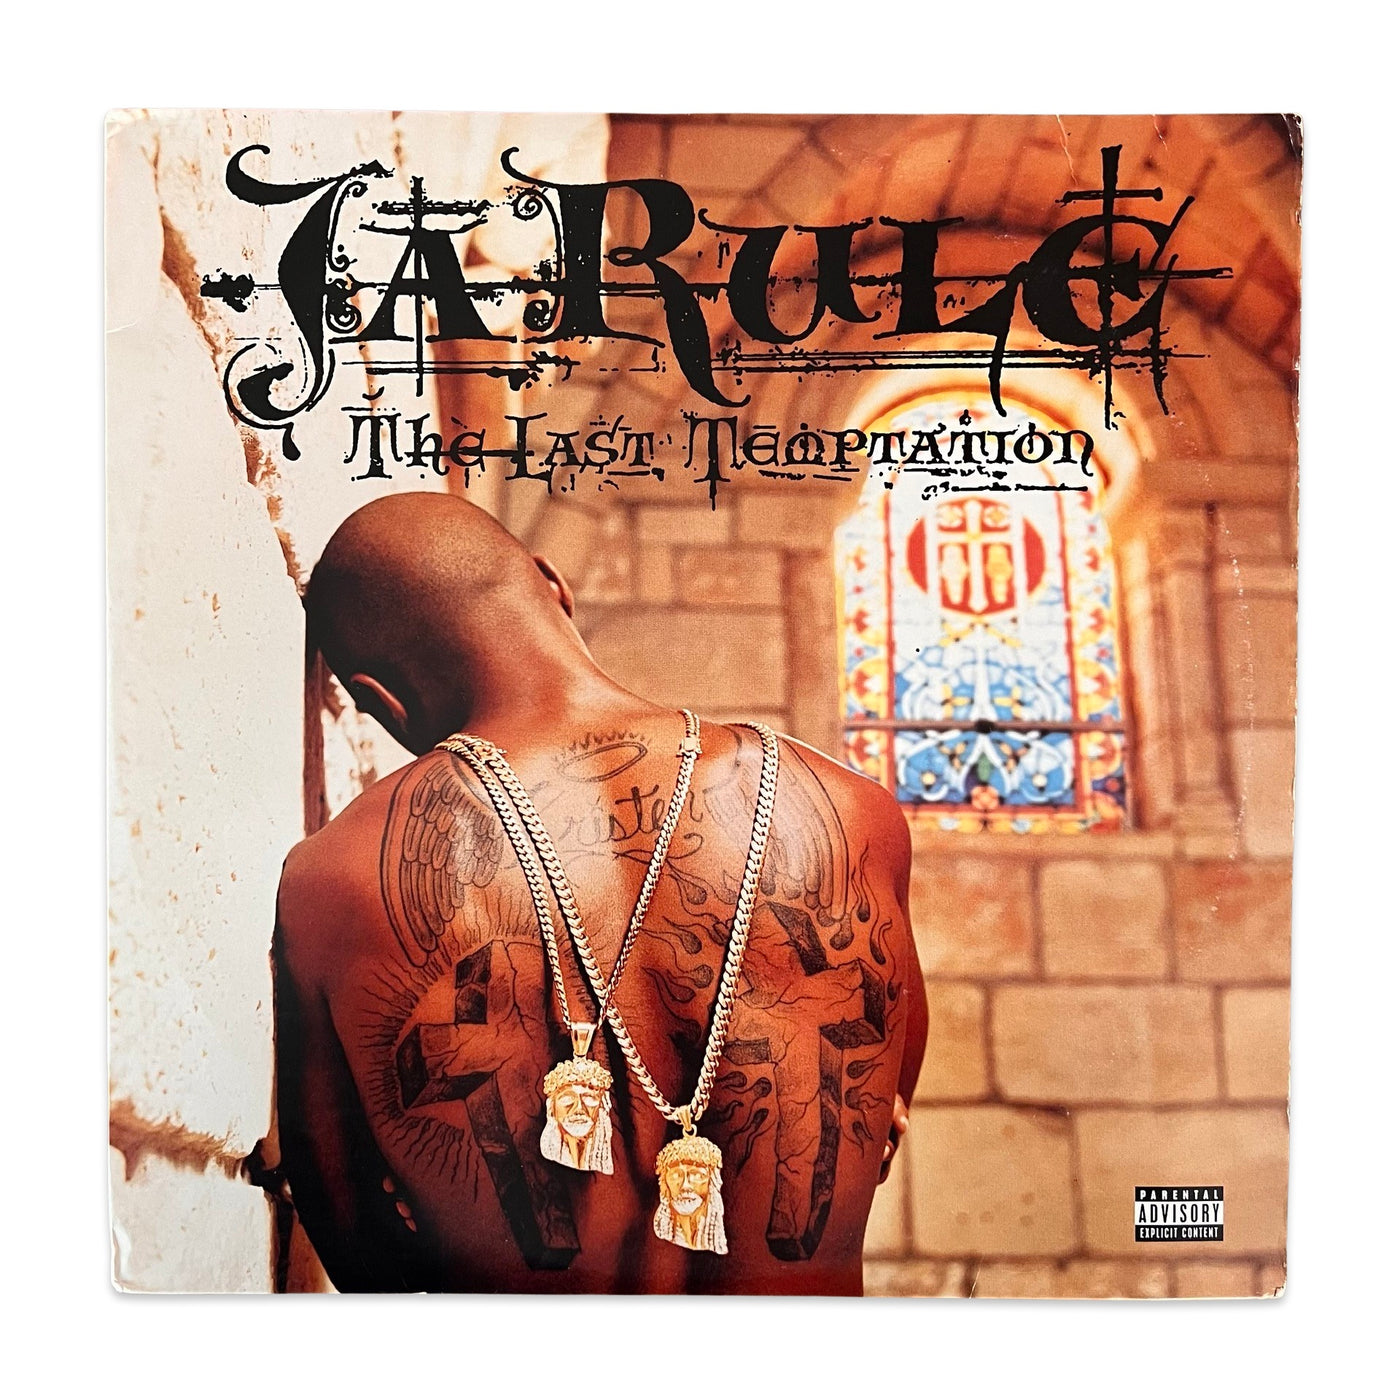 Ja Rule – The Last Temptation